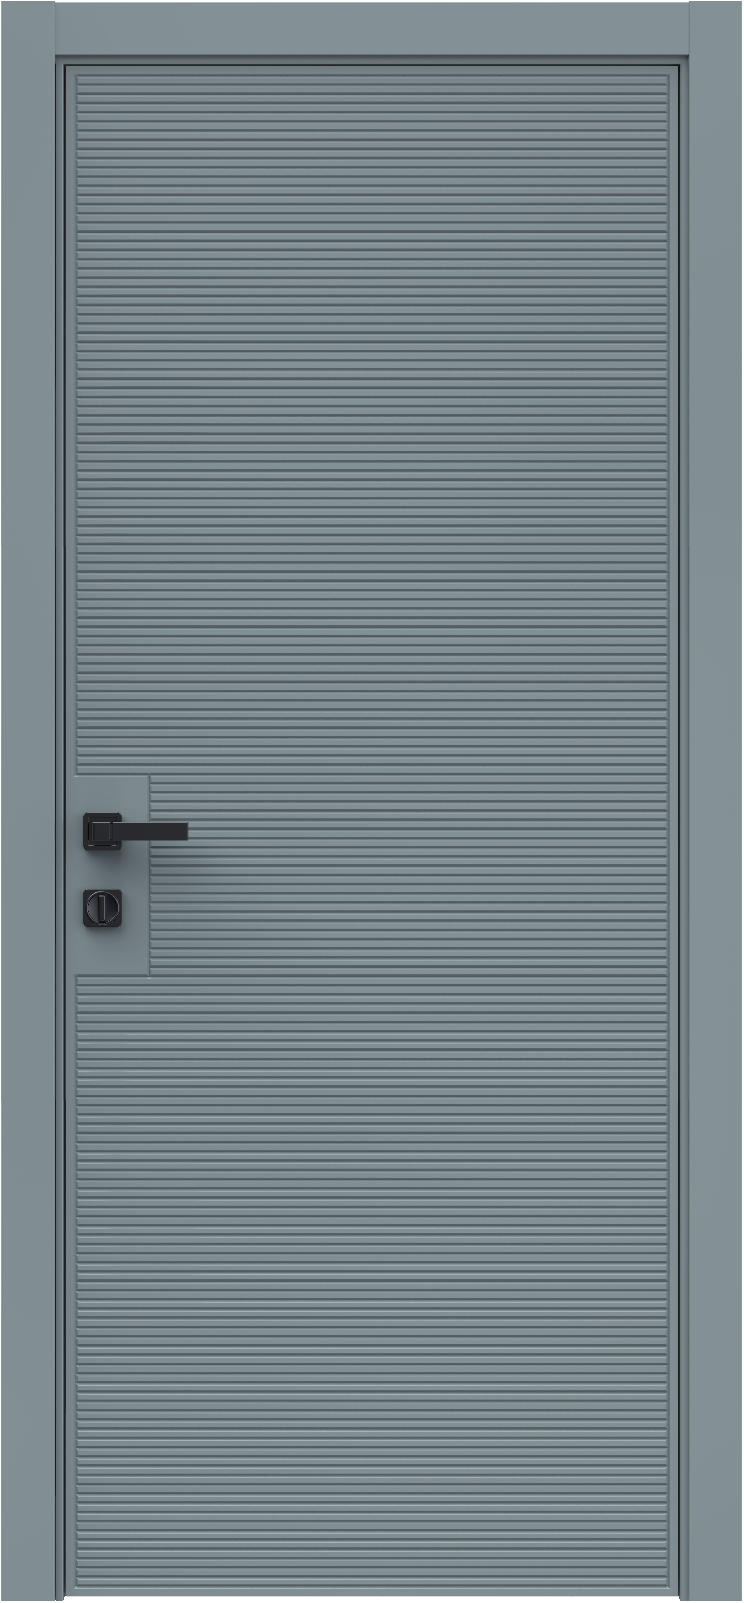 Questdoors Межкомнатная дверь QMS18, арт. 26292 - фото №1